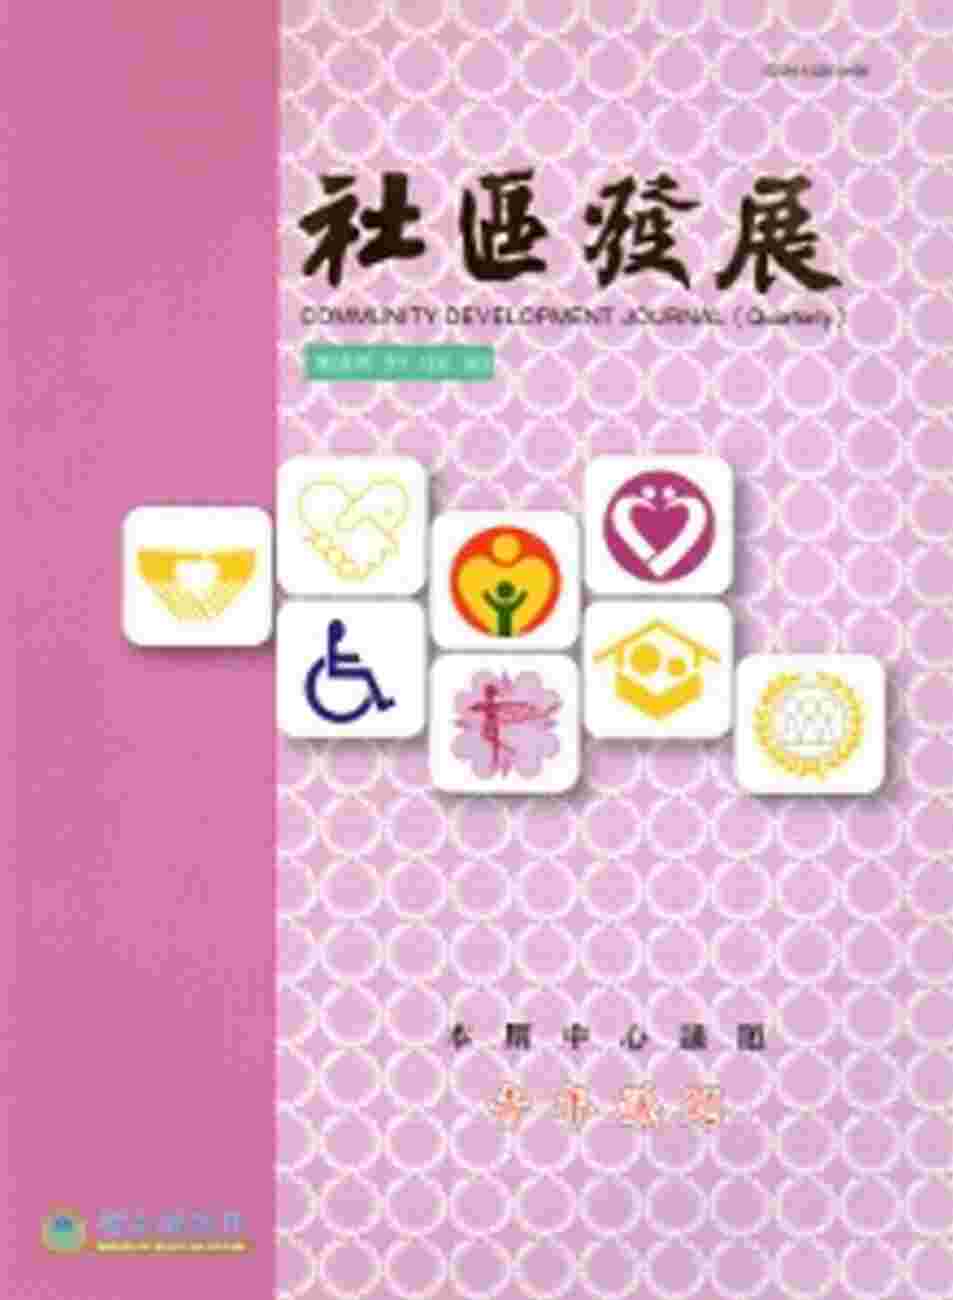 社區發展季刊146期-青年議題(2014/6)